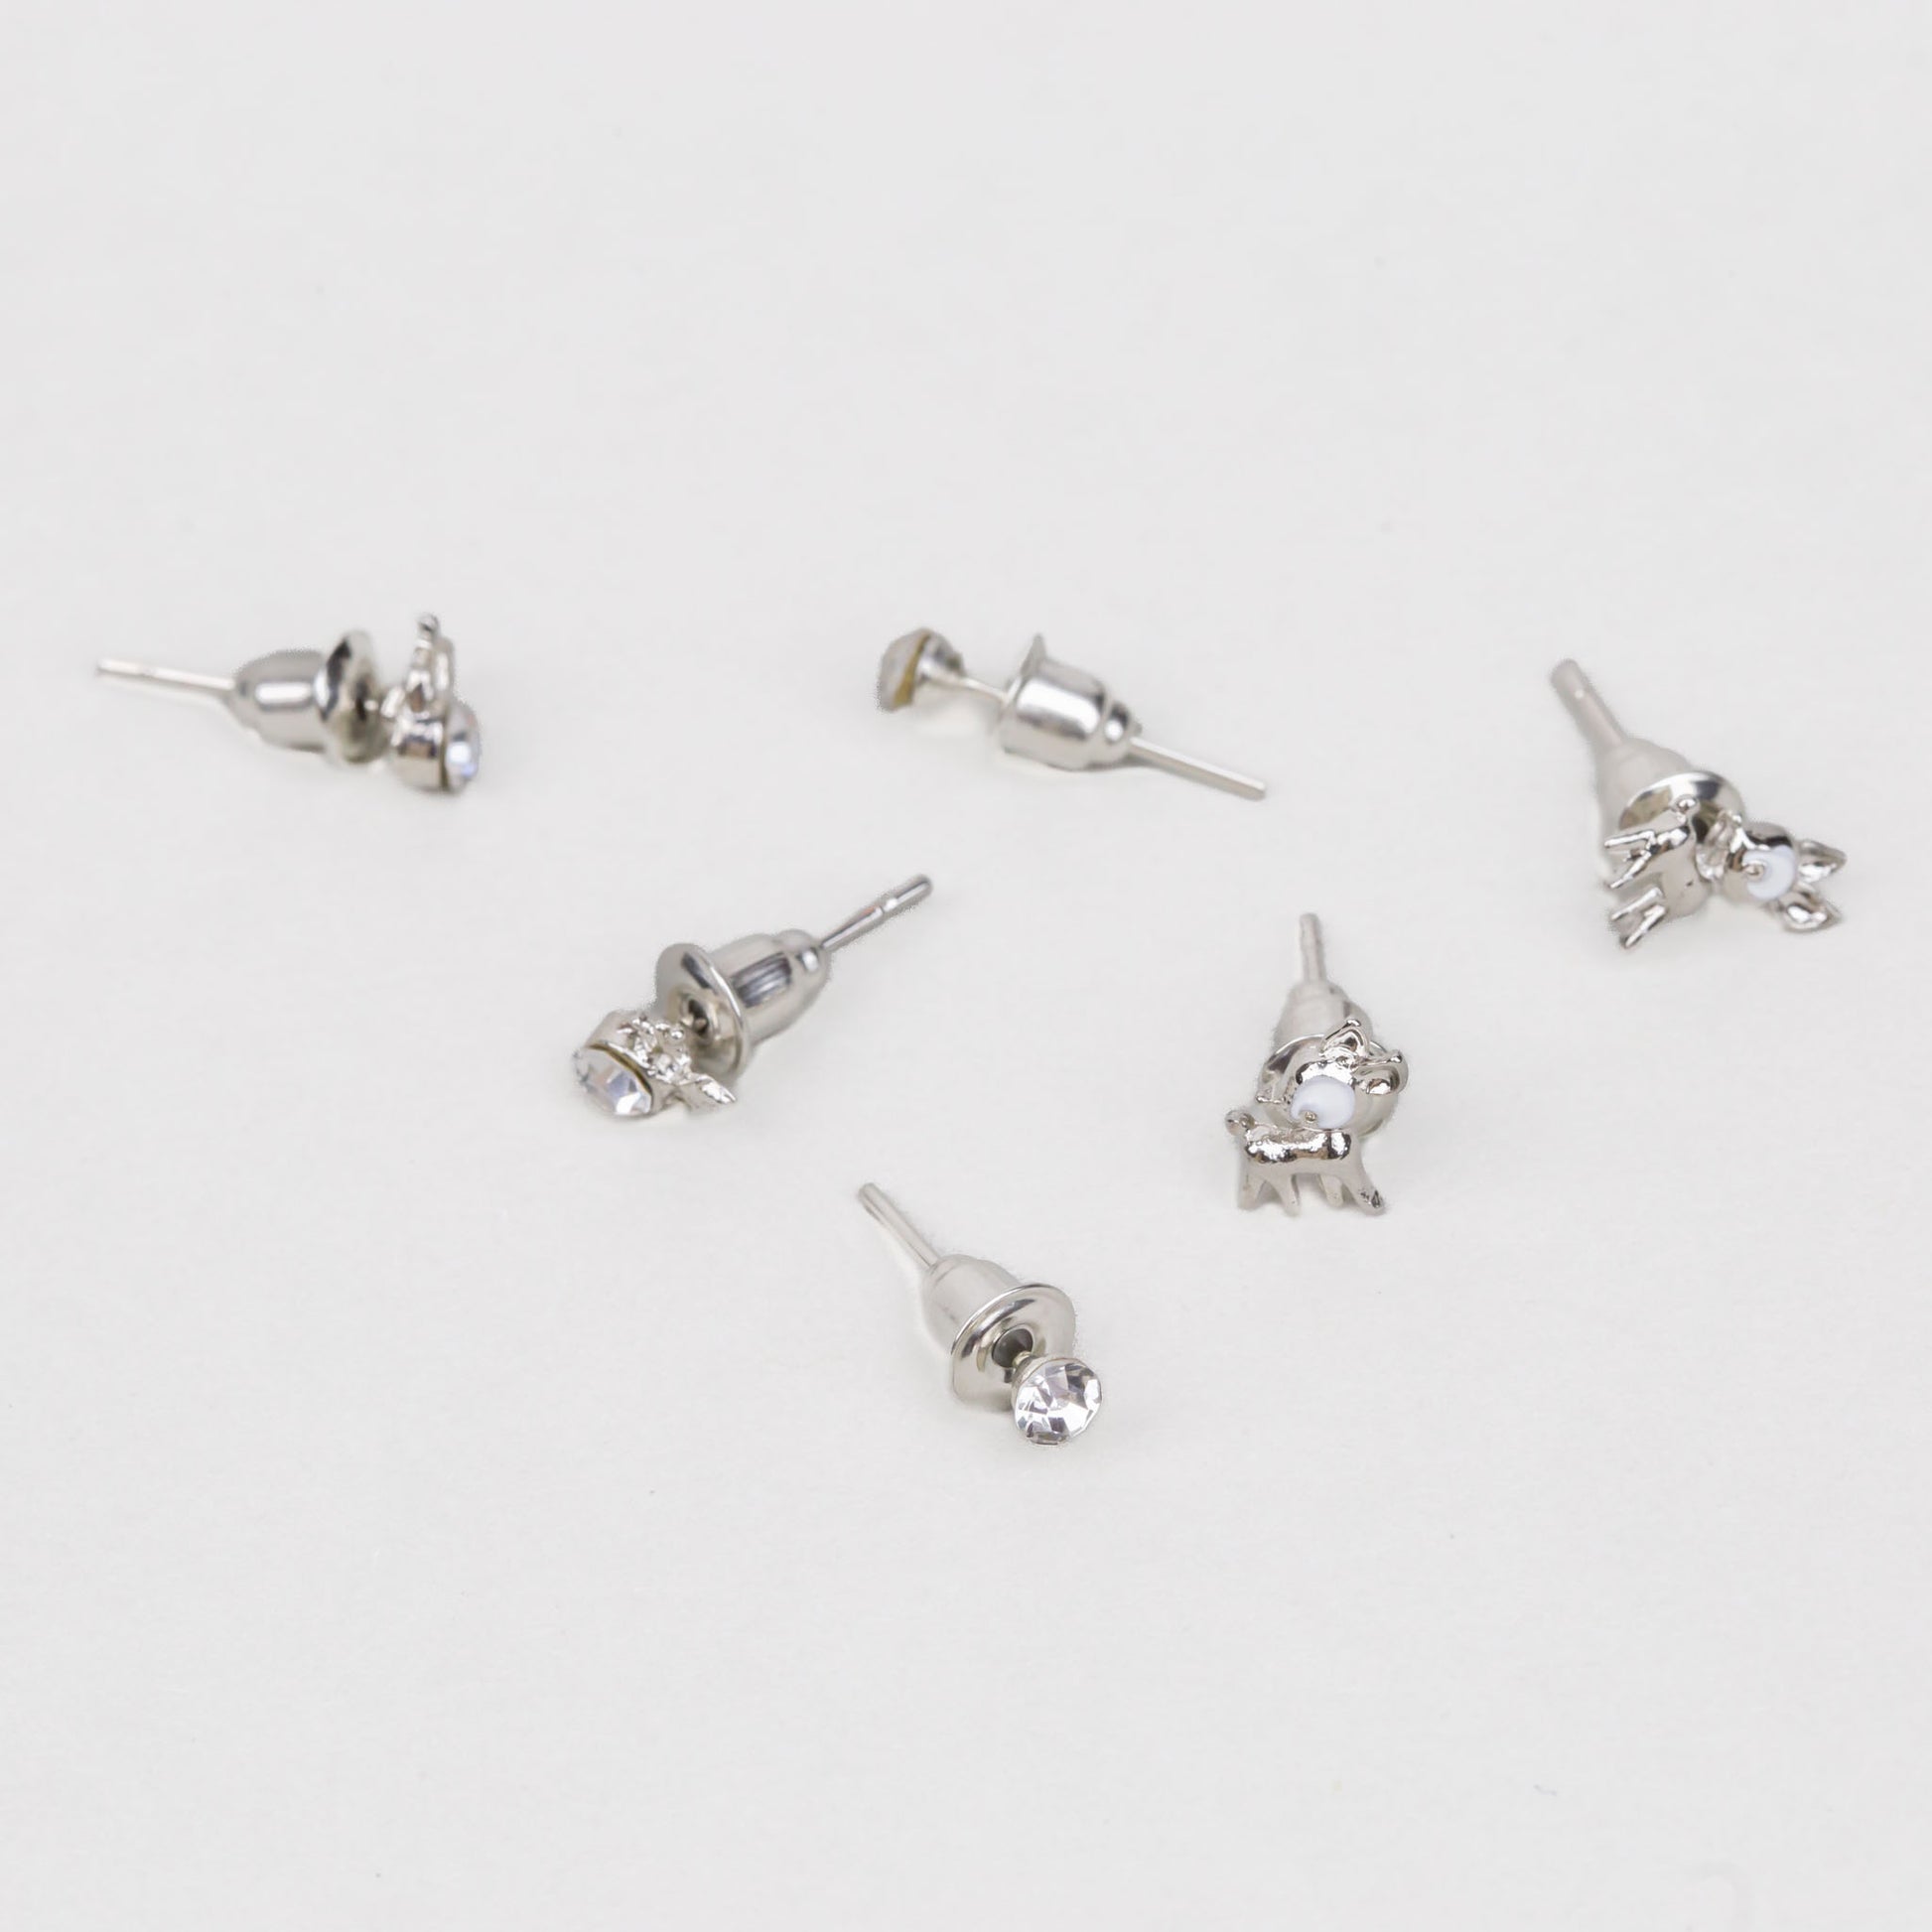 Cercei mici discreți cu reni și ștrasuri, set 3 perechi - Argintiu